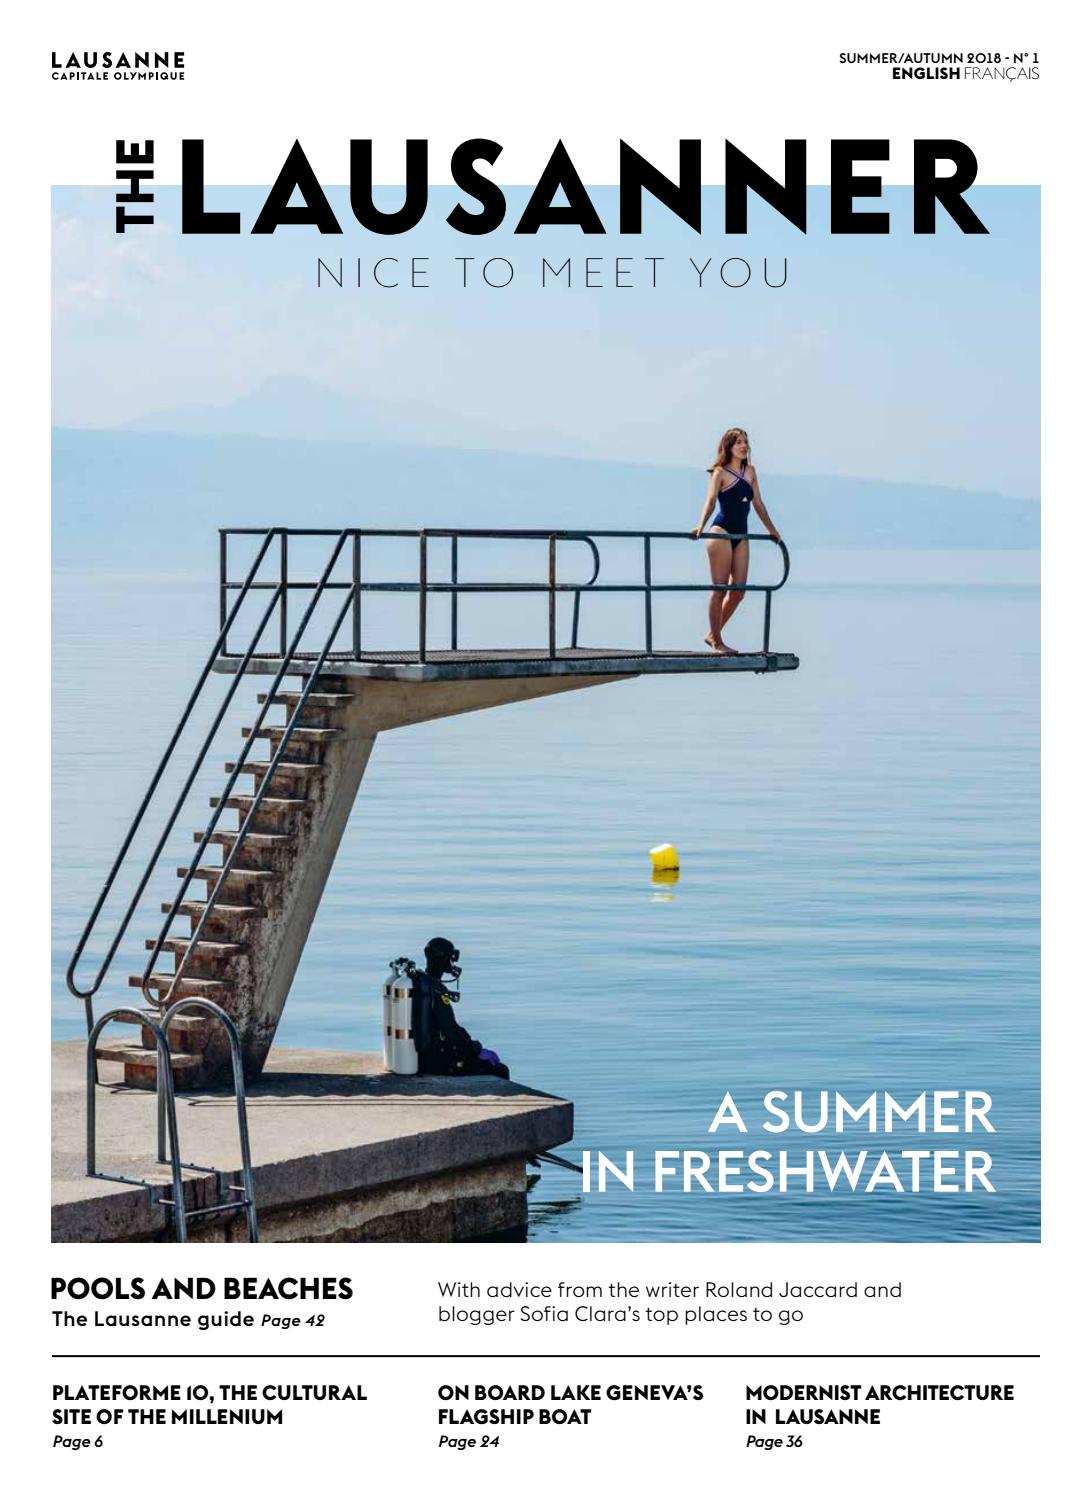 Salon De Jardin En Composite Charmant the Lausanner A Summer In Freshwater by Lausanne tourisme